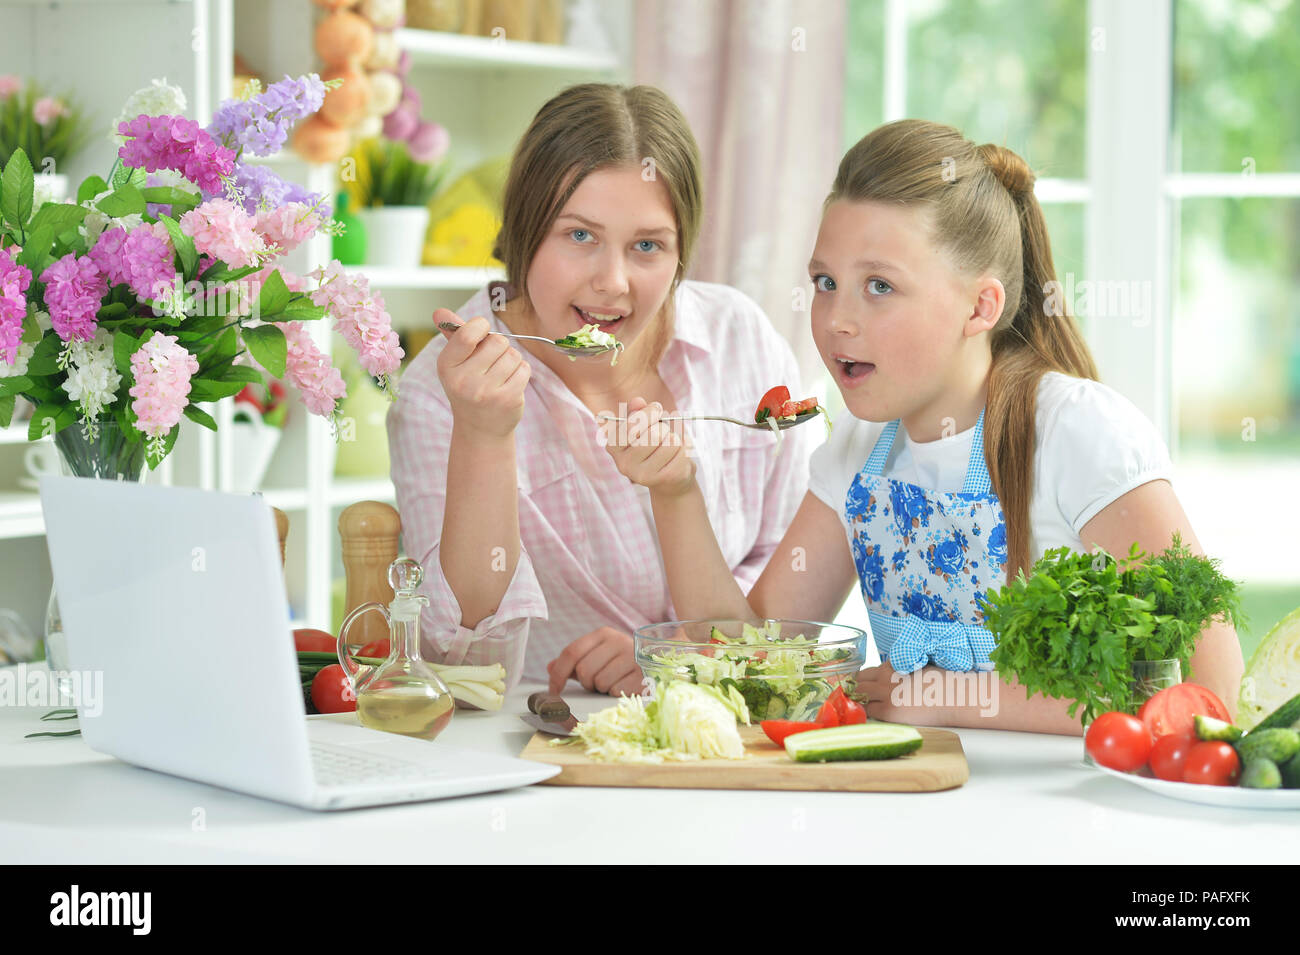 Funny Girls préparer une salade fraîche Banque D'Images